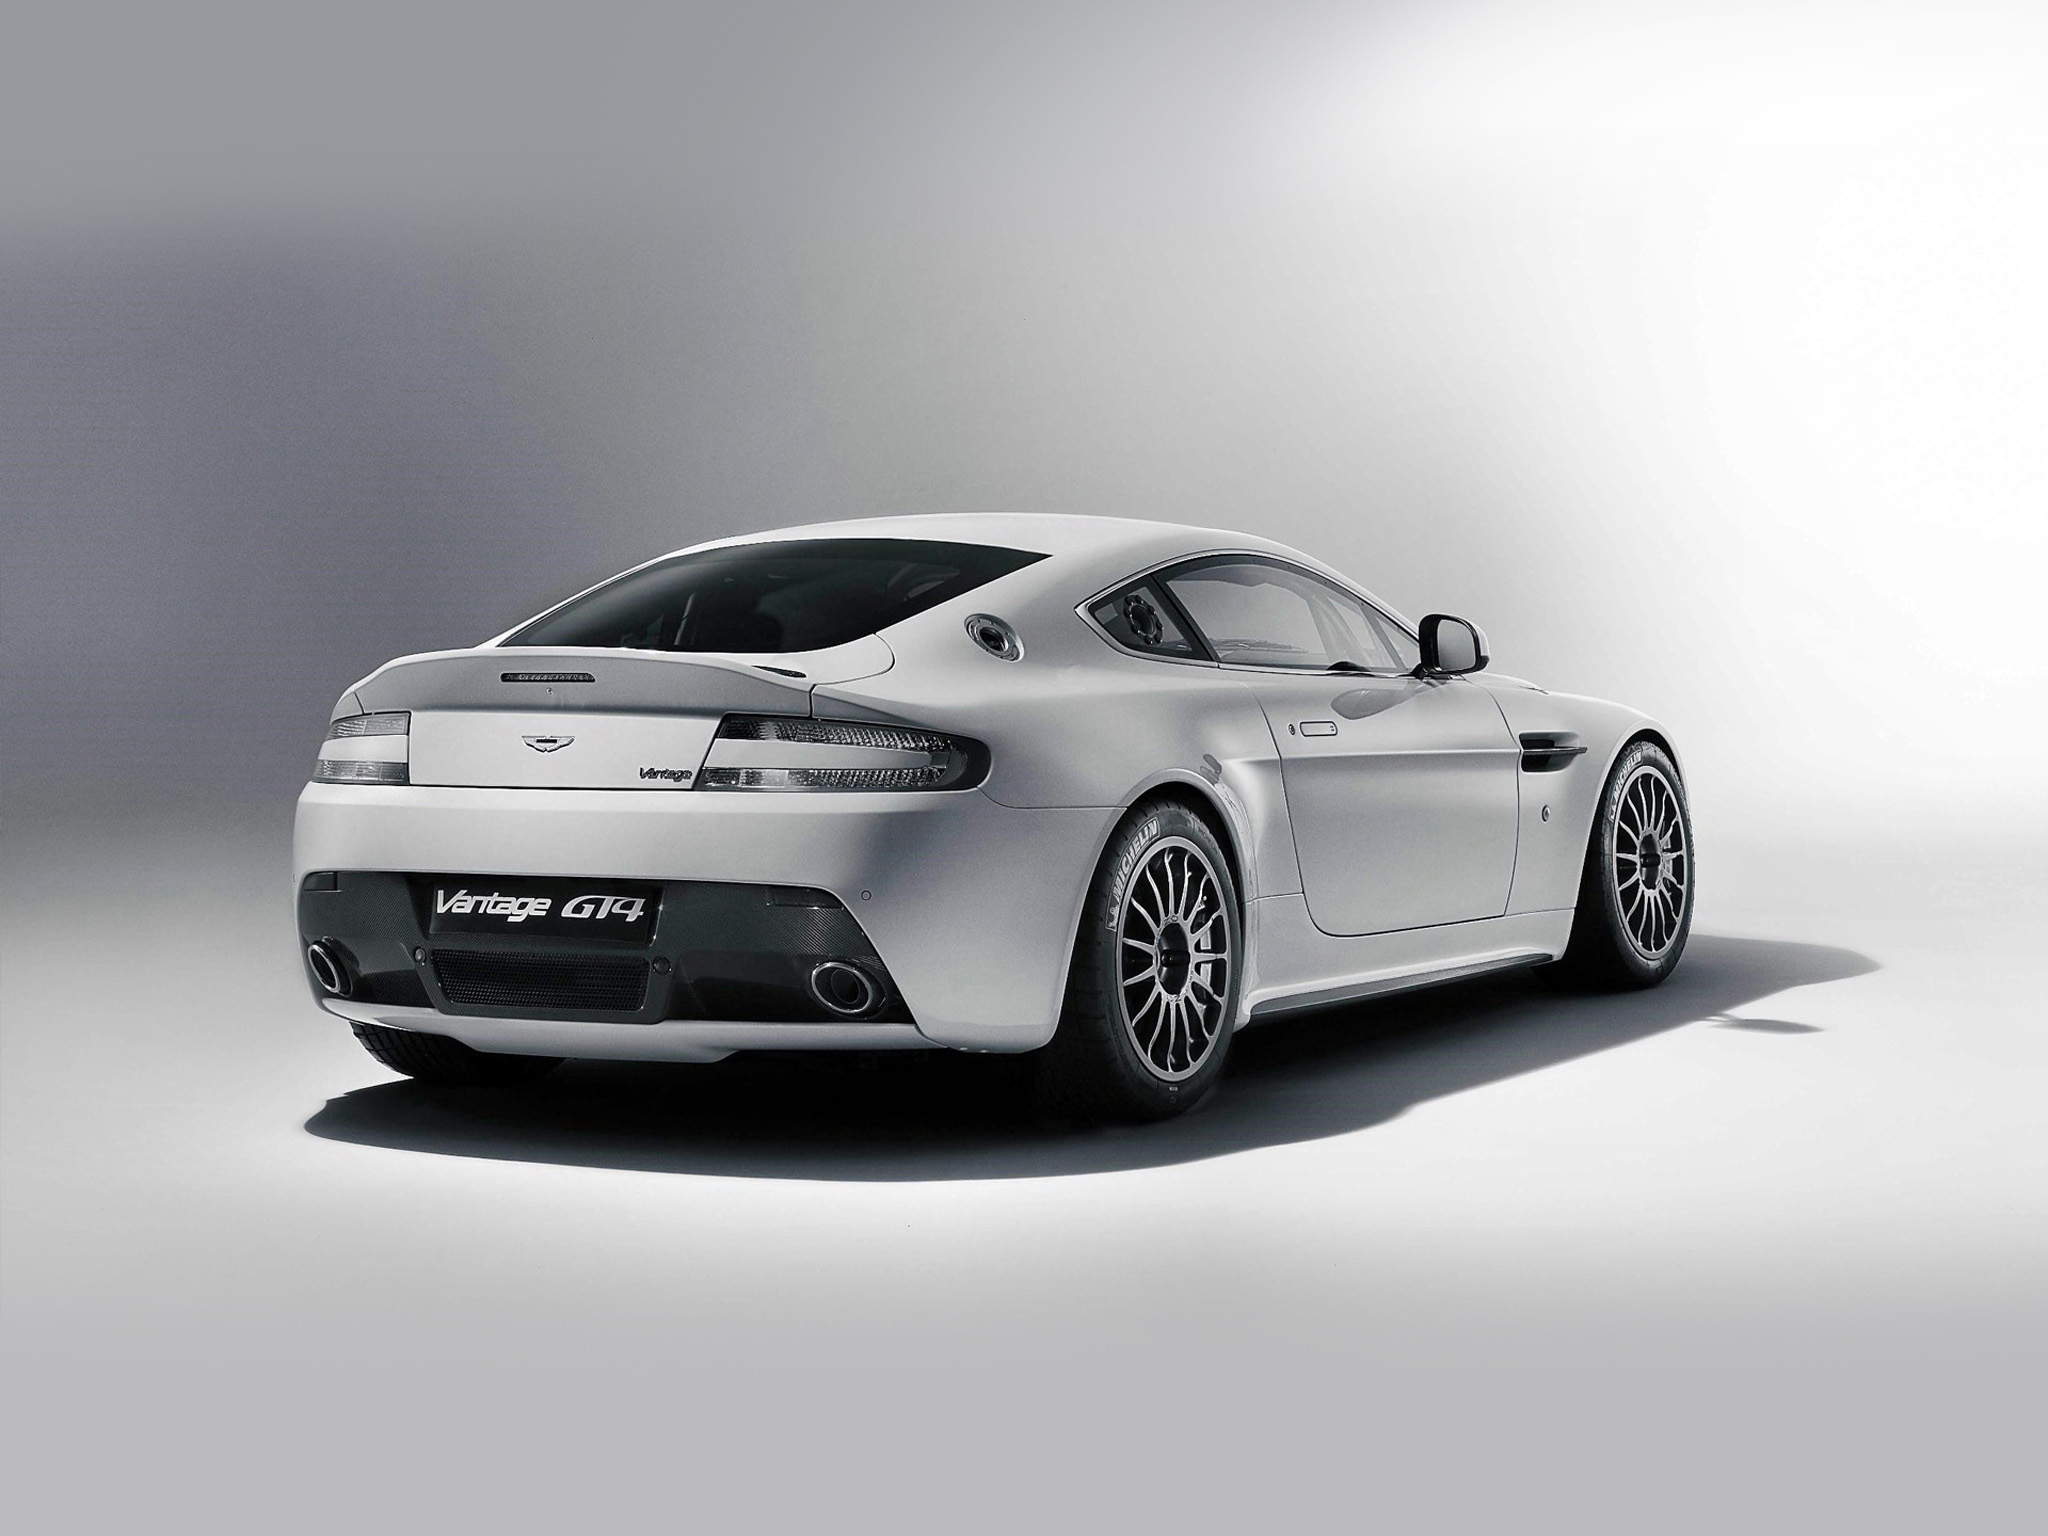  2011 Aston Martin Vantage GT4 Wallpaper.